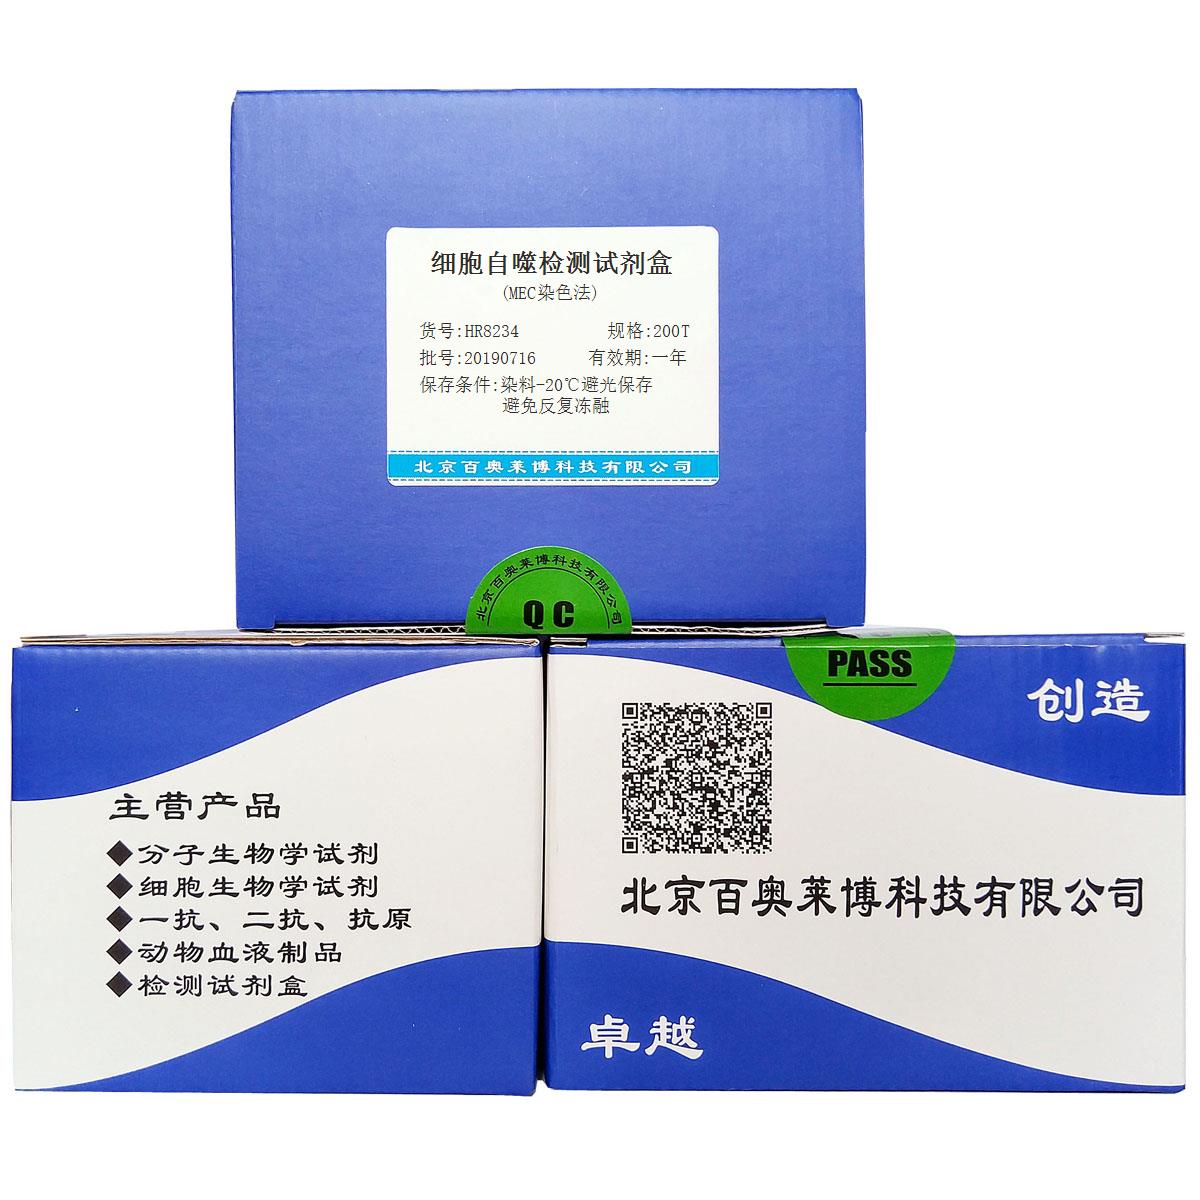 细胞自噬检测试剂盒(MEC染色法)北京厂家